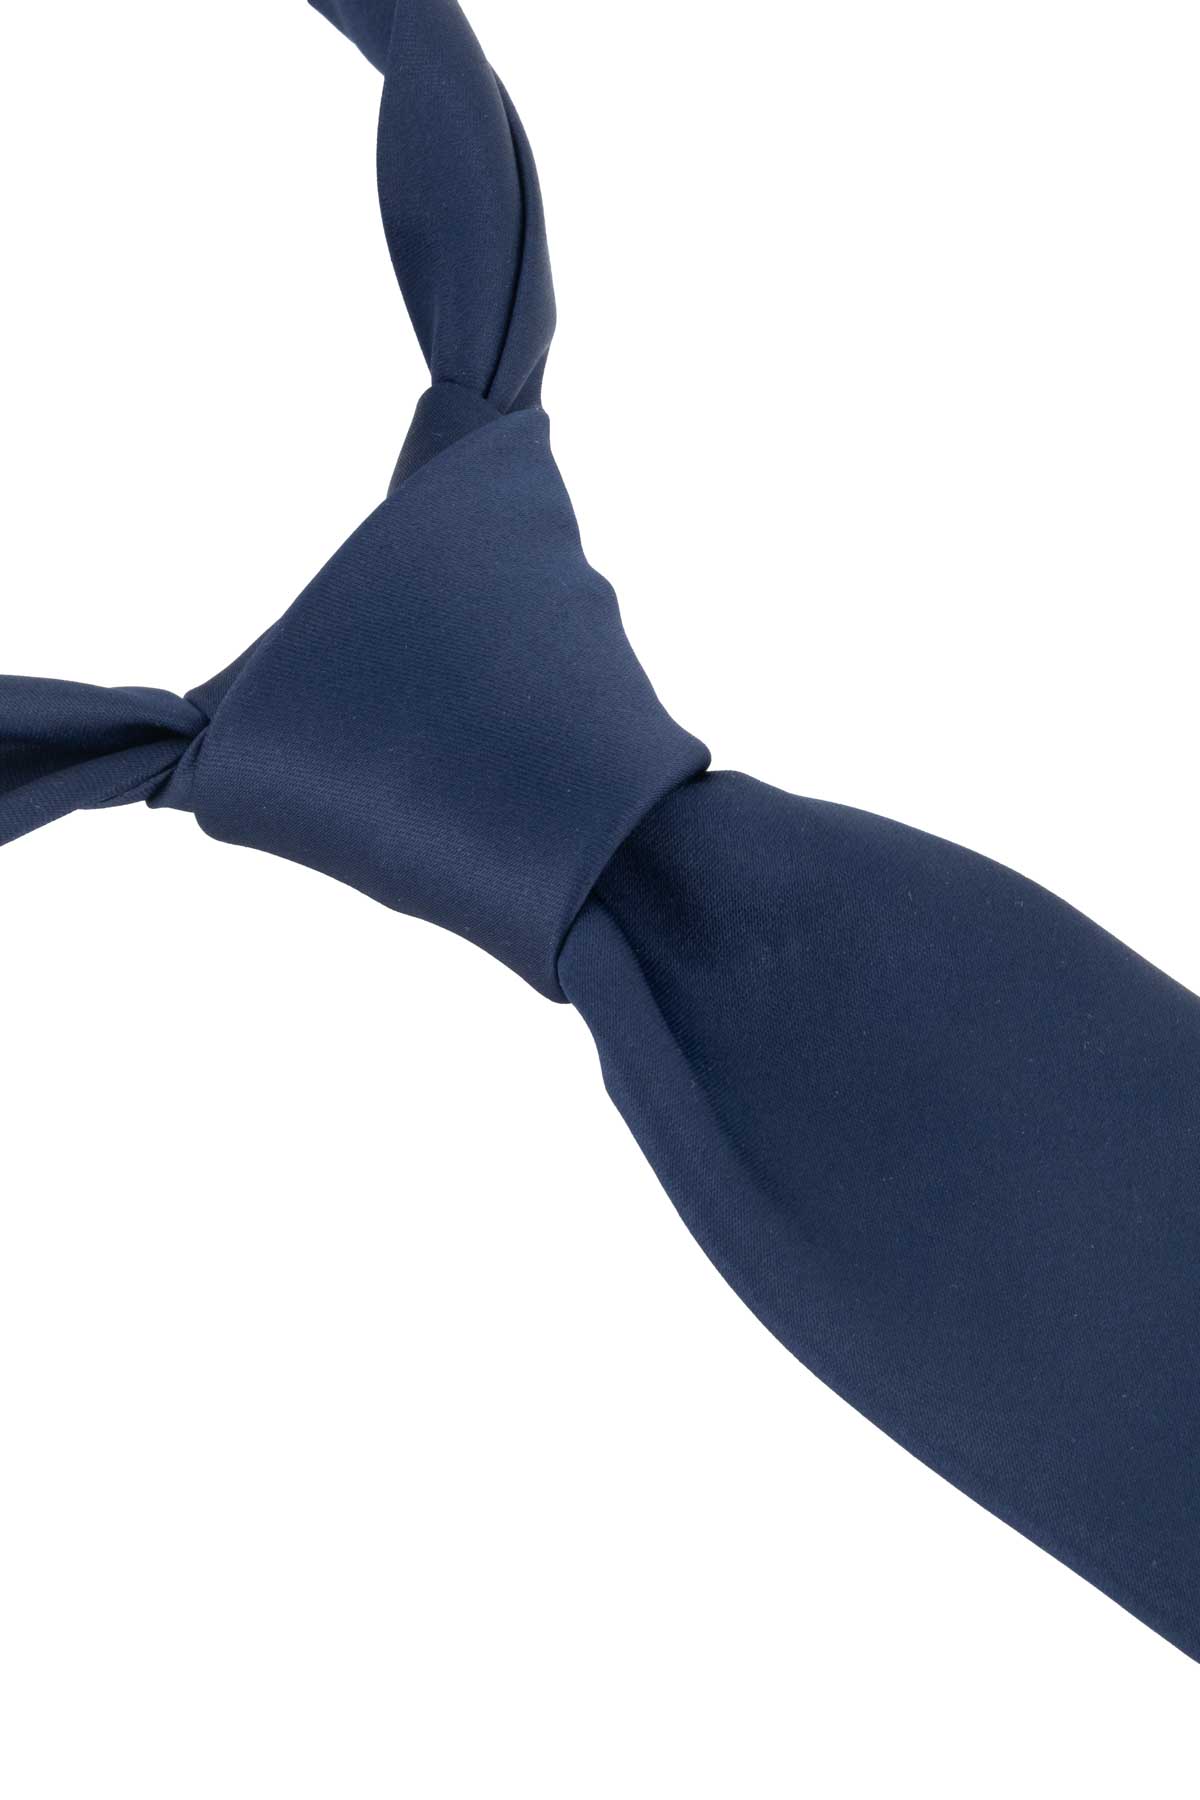 Corbata Roberts Azul Marino